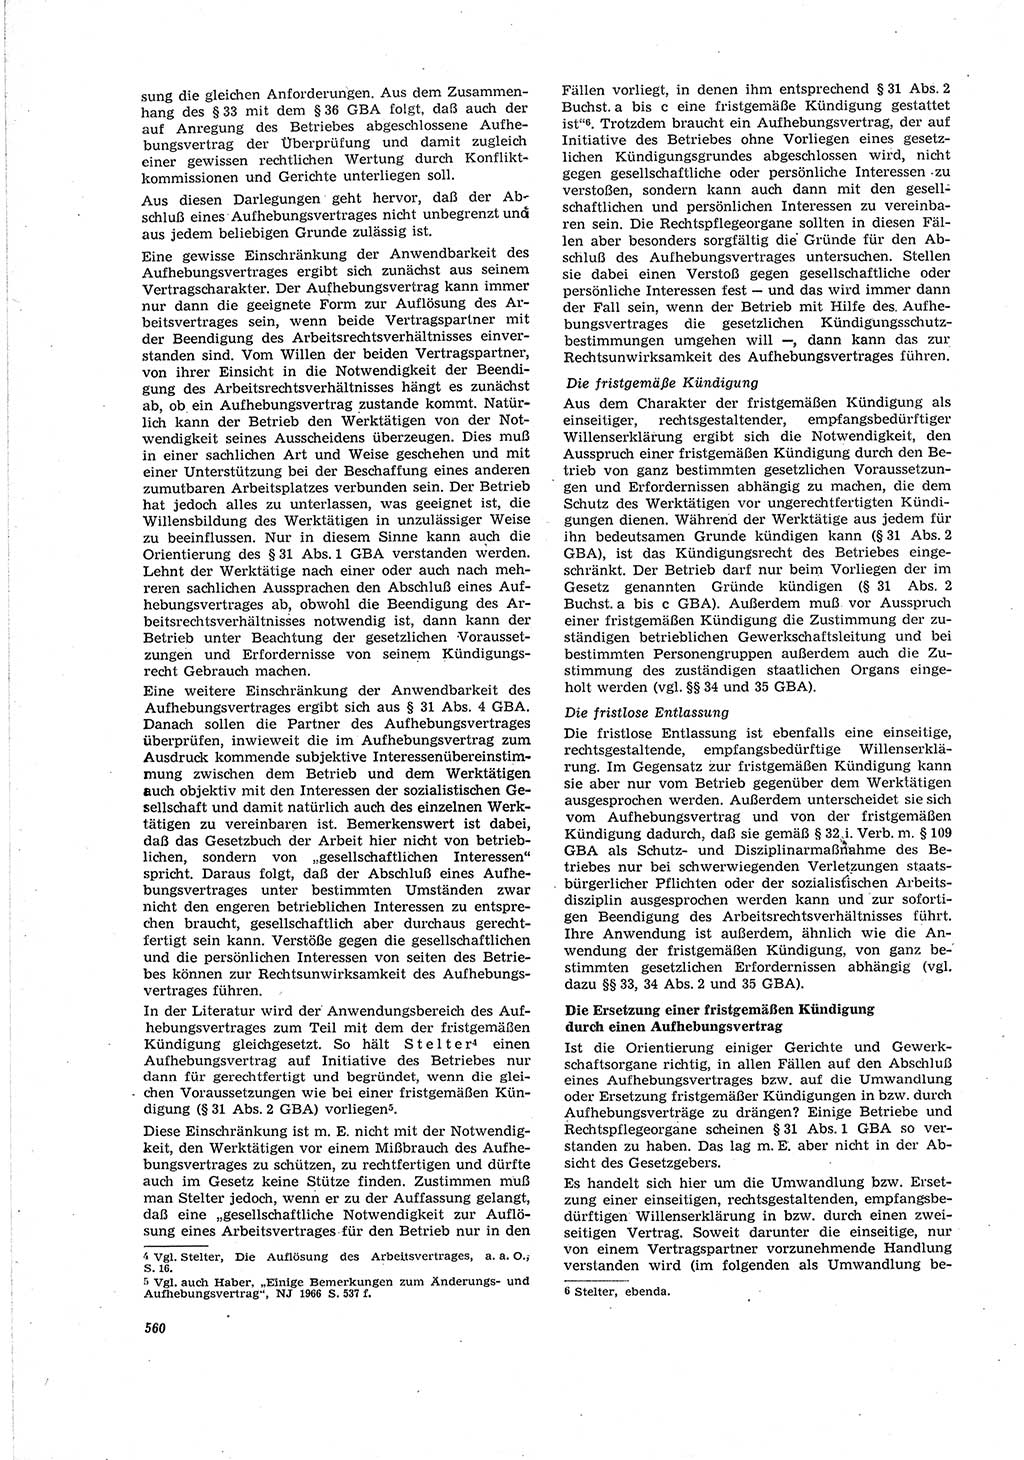 Neue Justiz (NJ), Zeitschrift für Recht und Rechtswissenschaft [Deutsche Demokratische Republik (DDR)], 20. Jahrgang 1966, Seite 560 (NJ DDR 1966, S. 560)